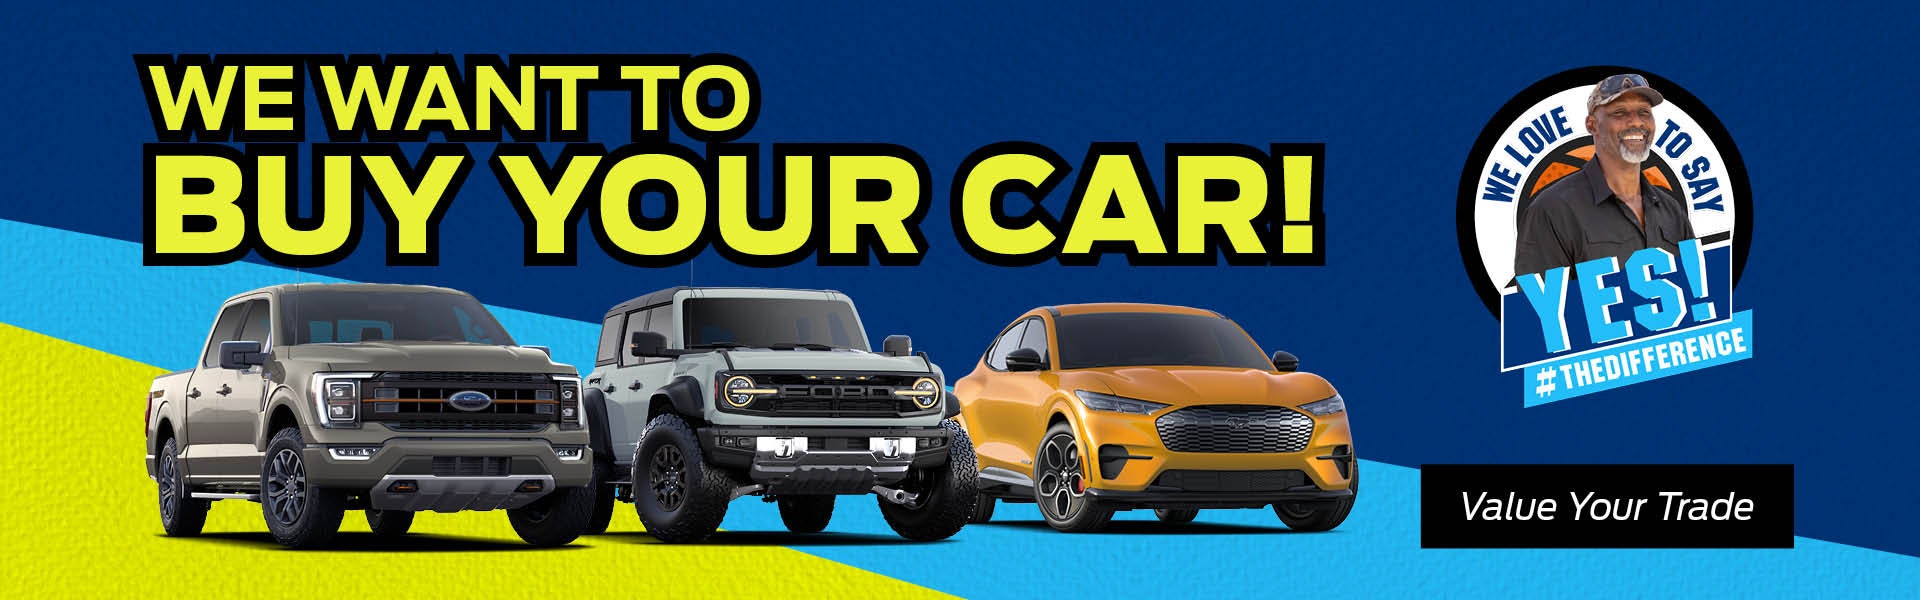 We Want To Buy Your Car in El Dorado AR 